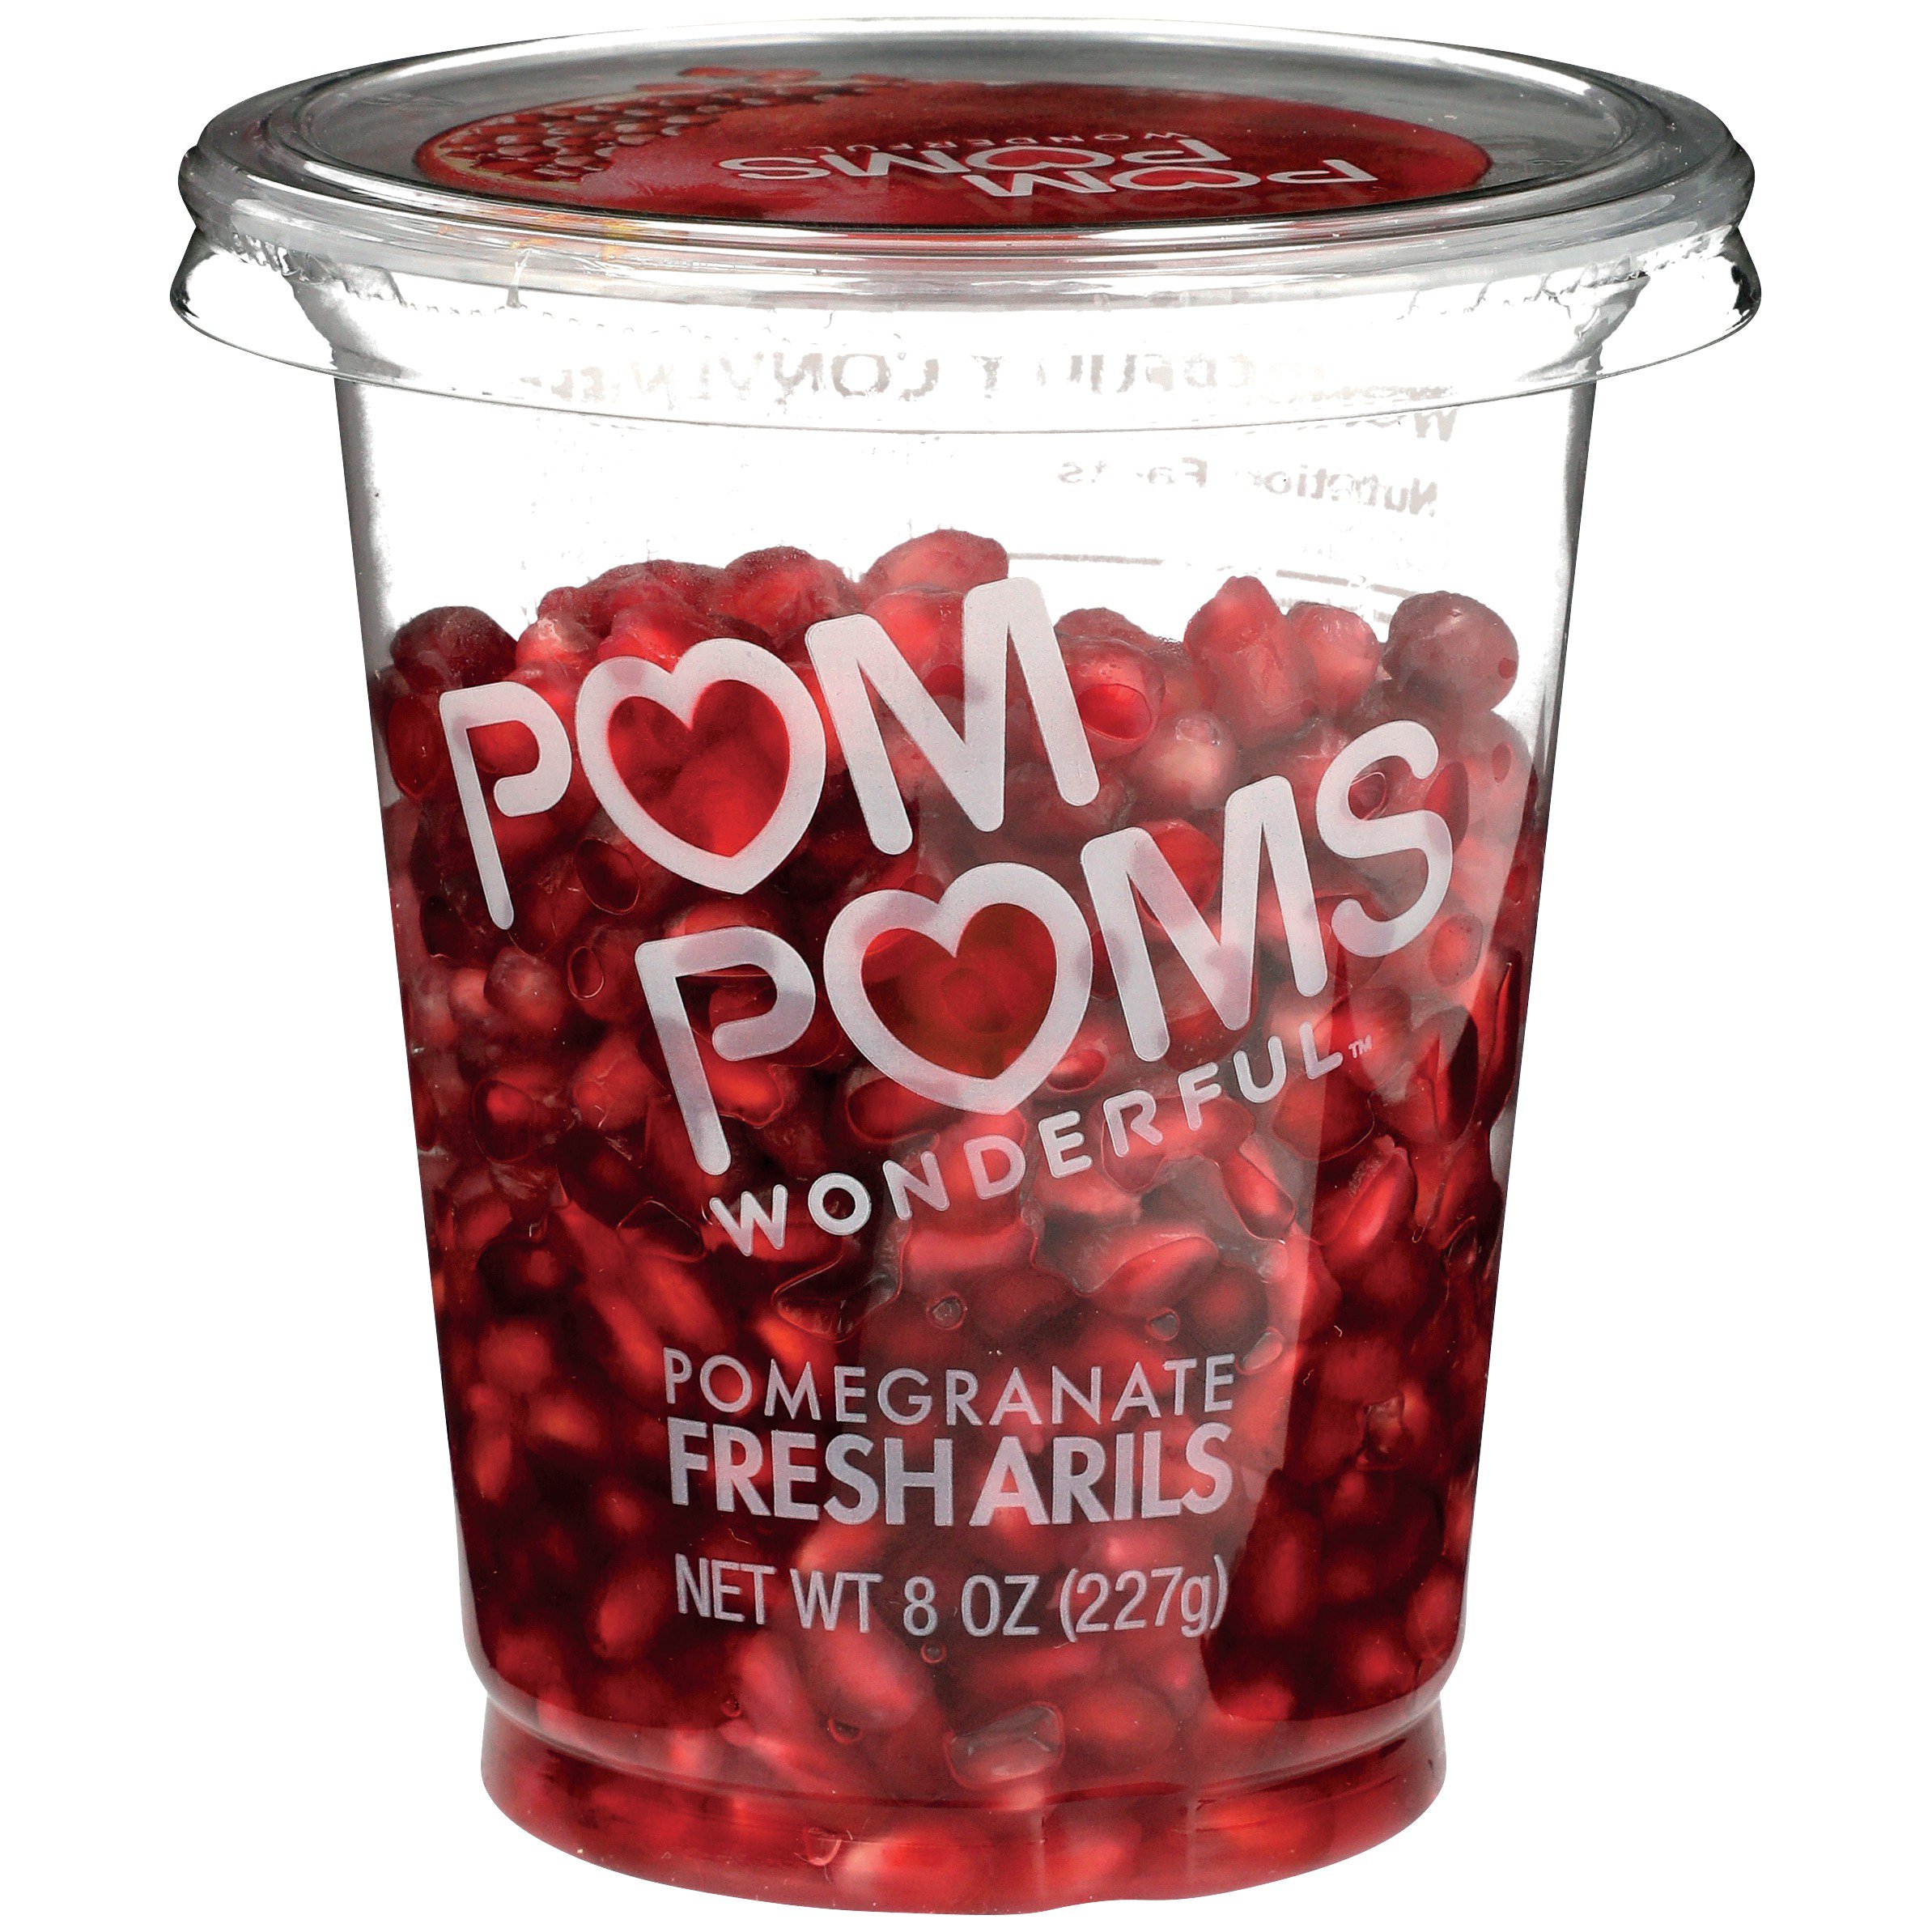 Pom Wonderful Pomegranate Fresh Arils, 8 oz